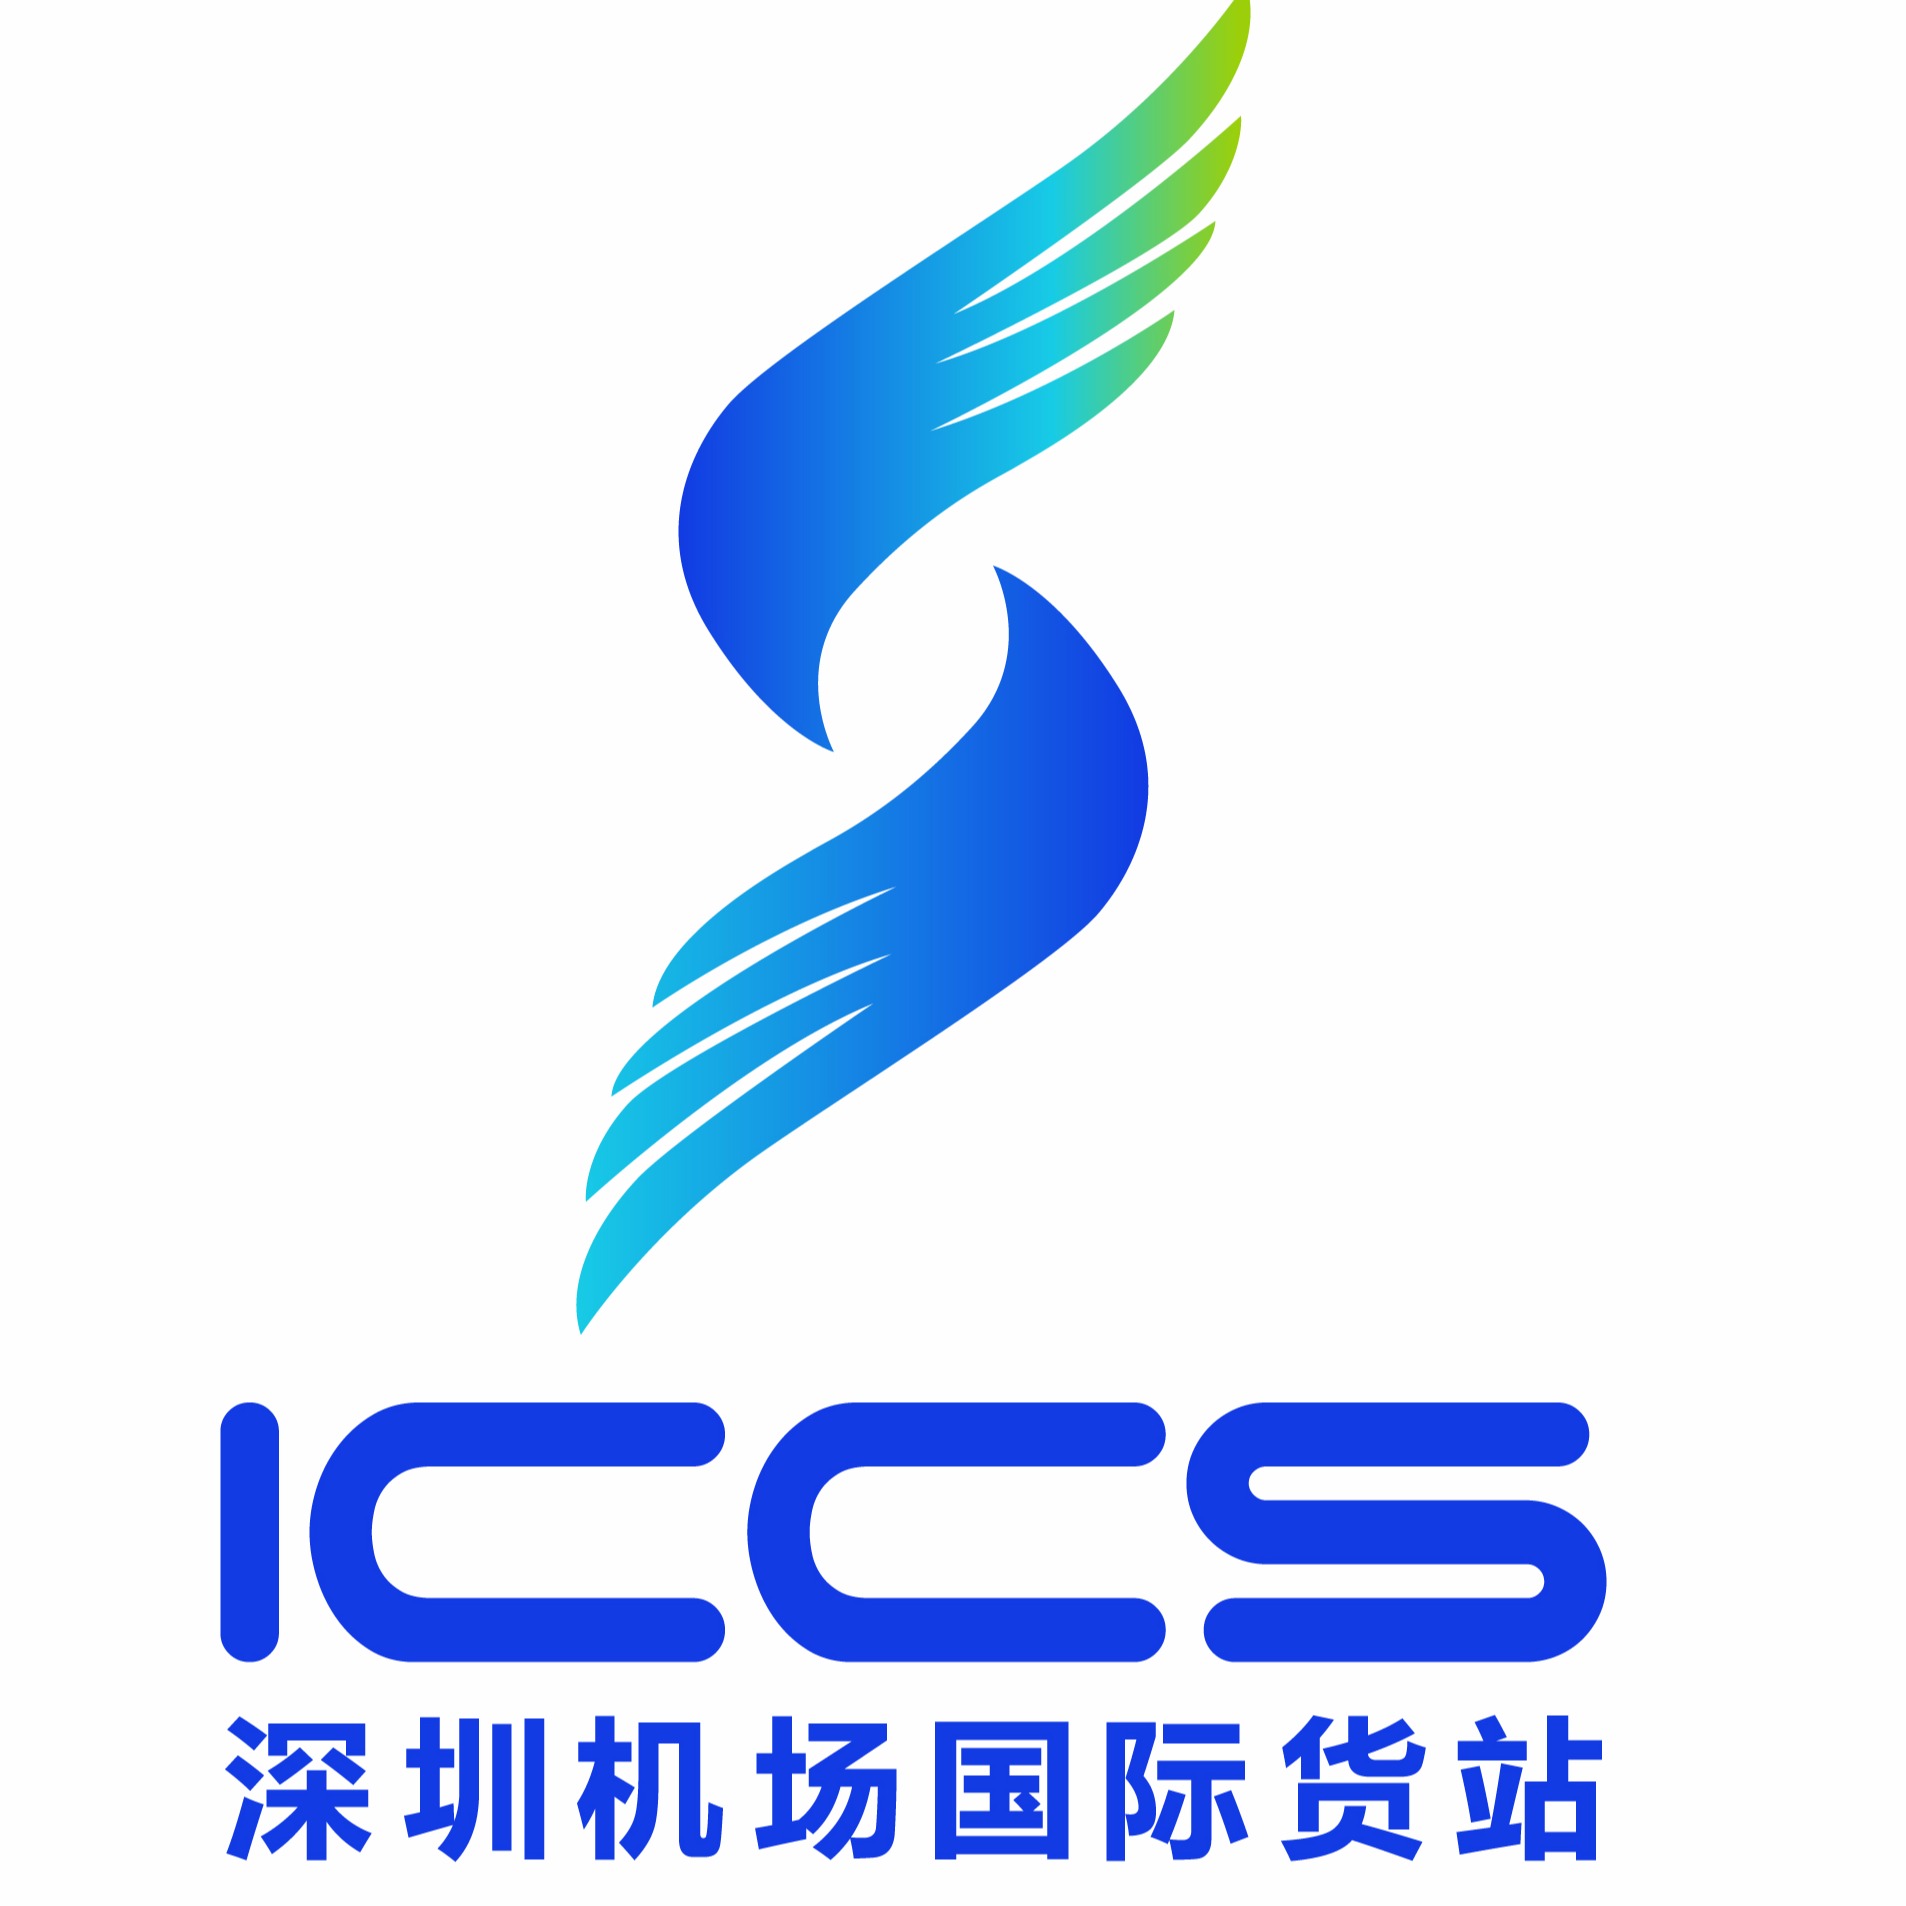 深圳机场logo演变图片